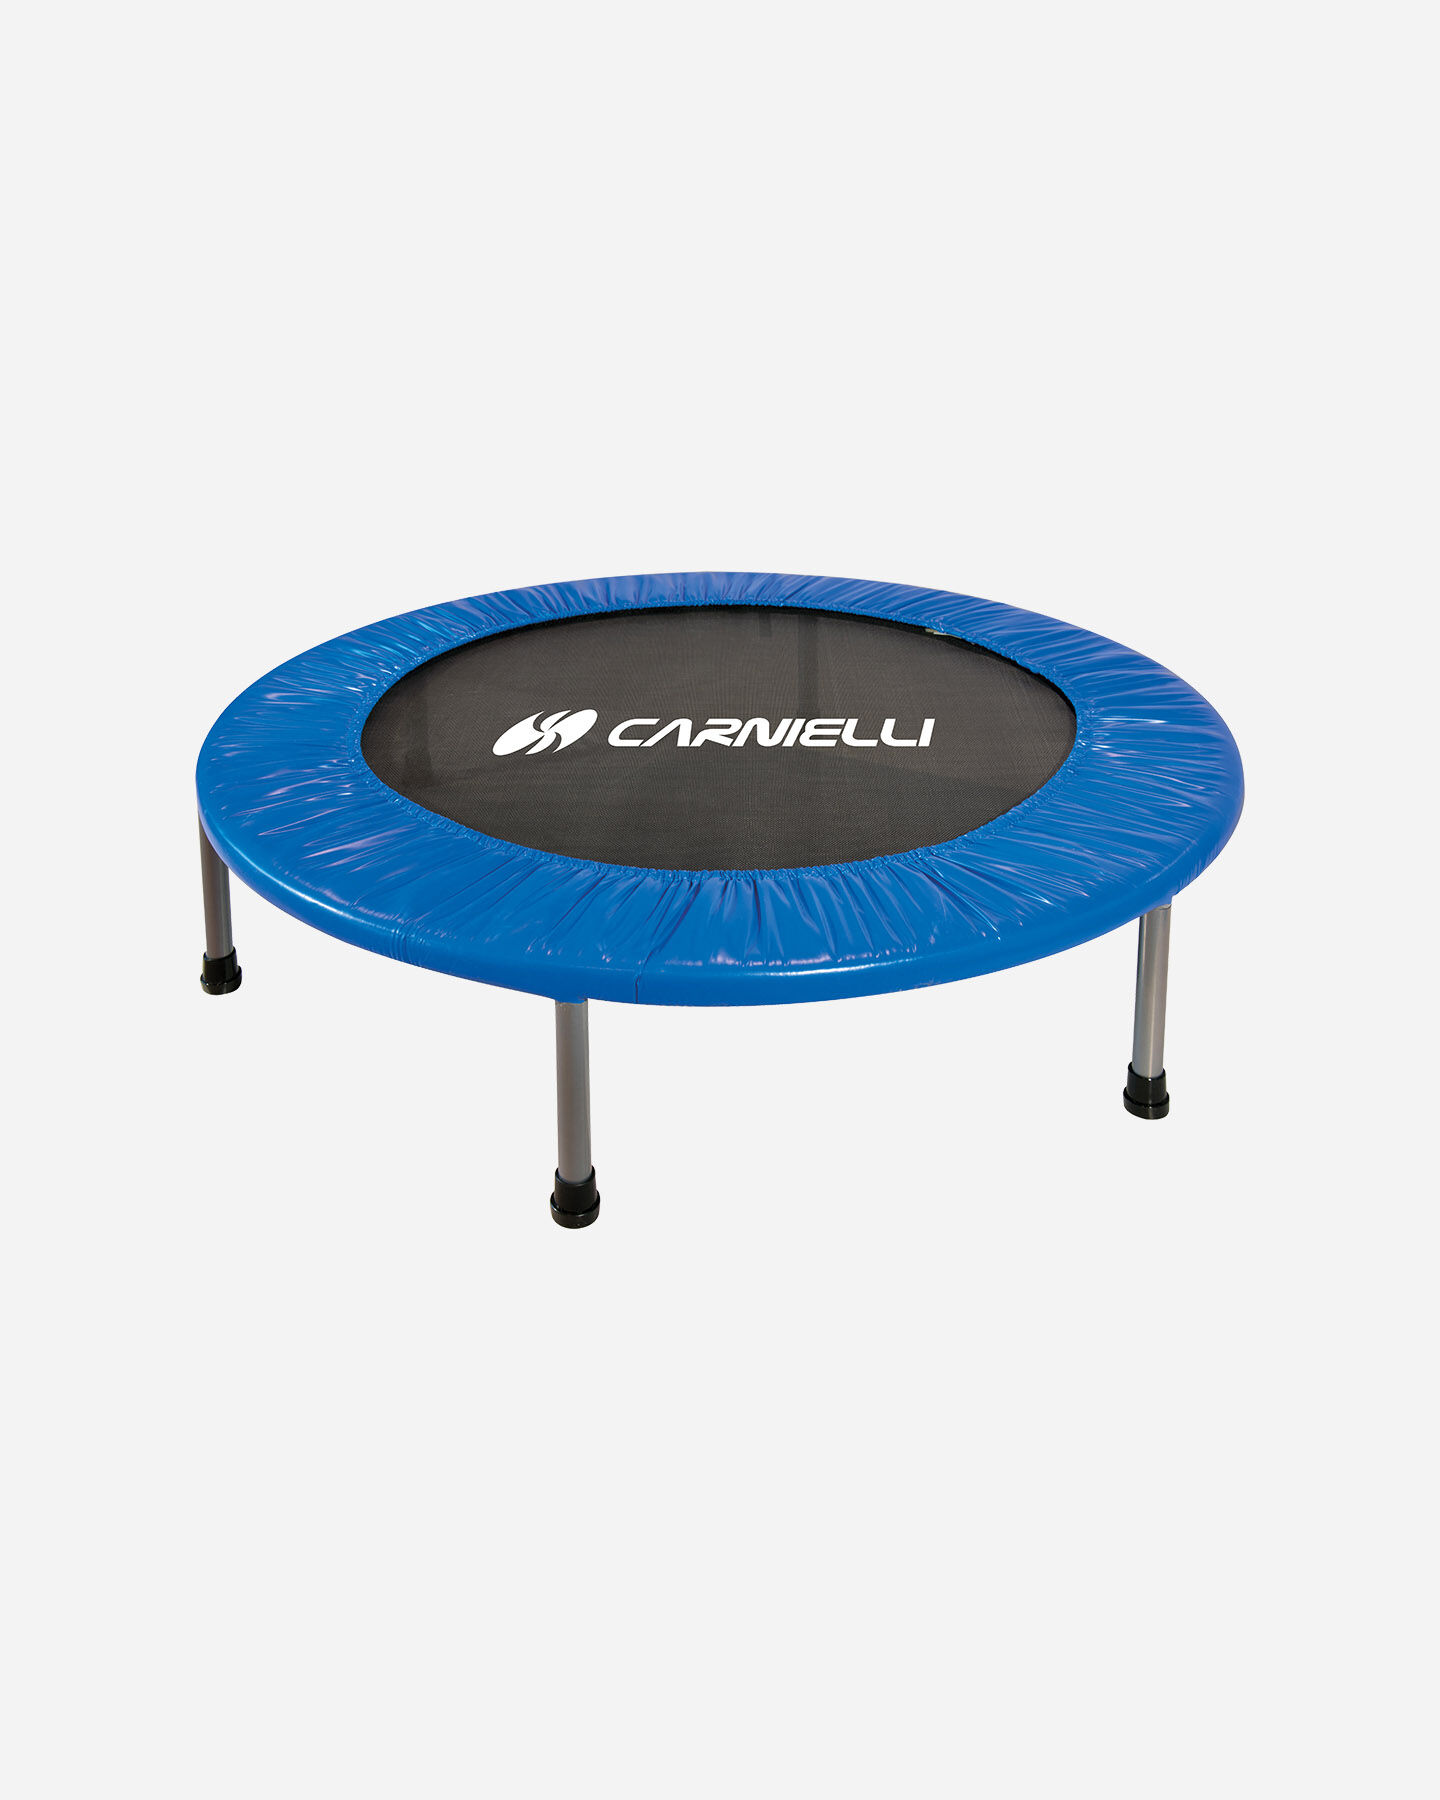 DH FitLife Fitness trampolino pieghevole in gomma silenziosa senza installazione 127 cm trampolino elastico per interni ed esterni 127 cm Ø ca con 6 livelli di impugnatura regolabili 